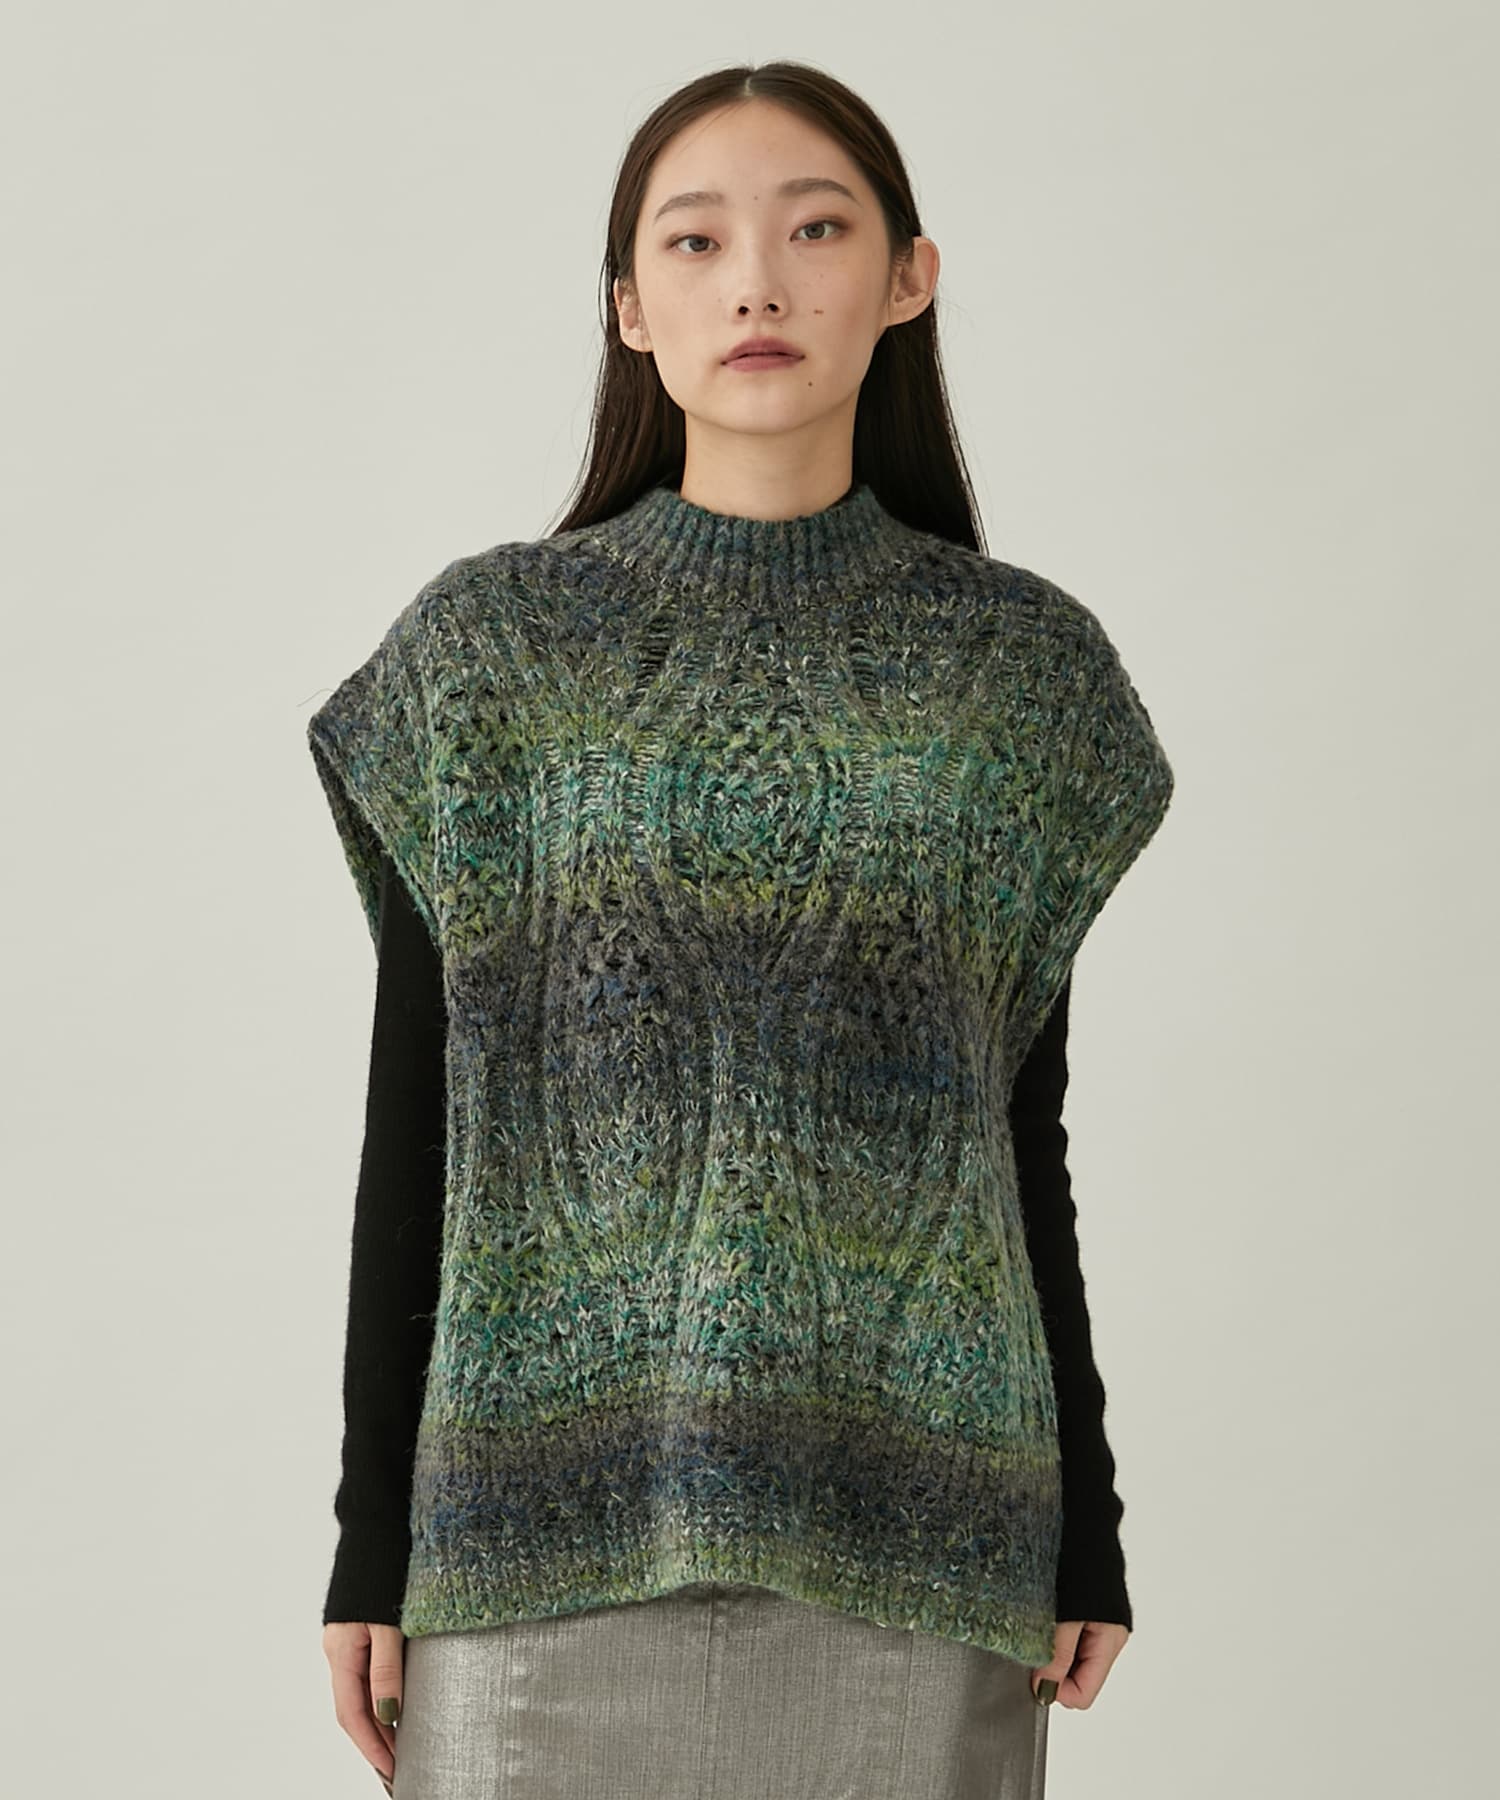 Hazy knit vest